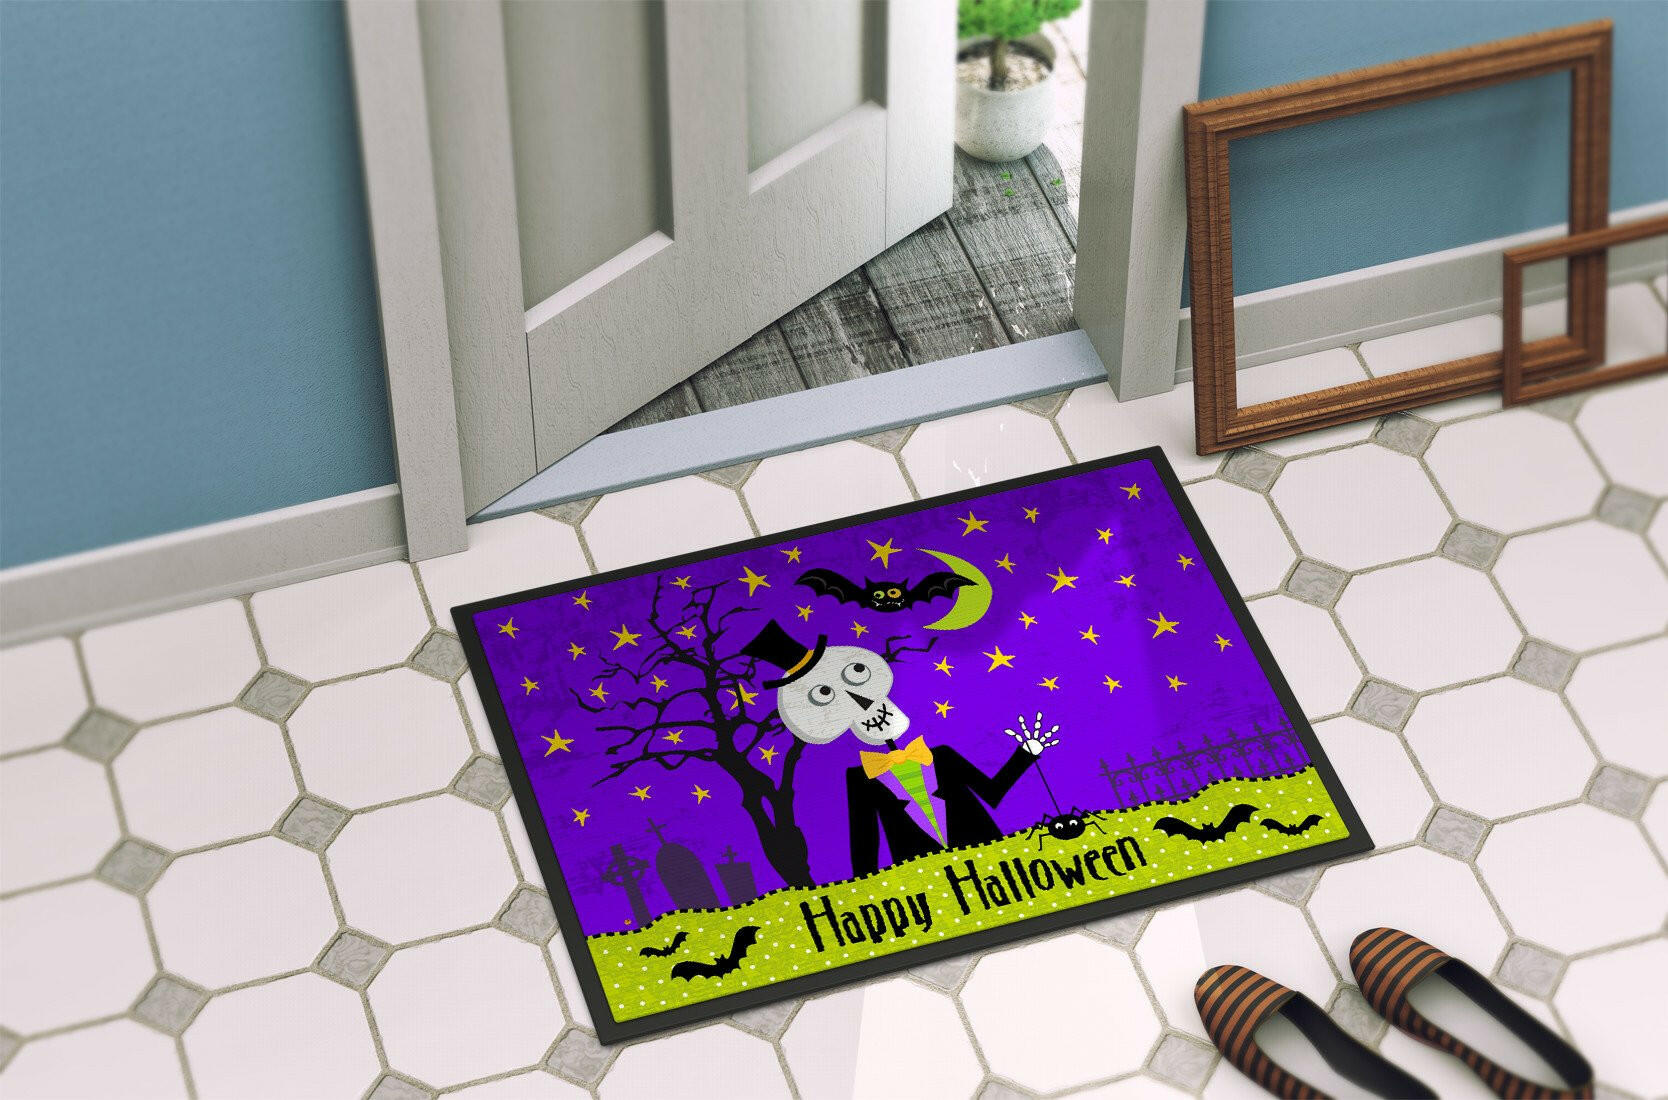 Happy Halloween Skeleton Indoor or Outdoor Mat 24x36 VHA3014JMAT - the-store.com